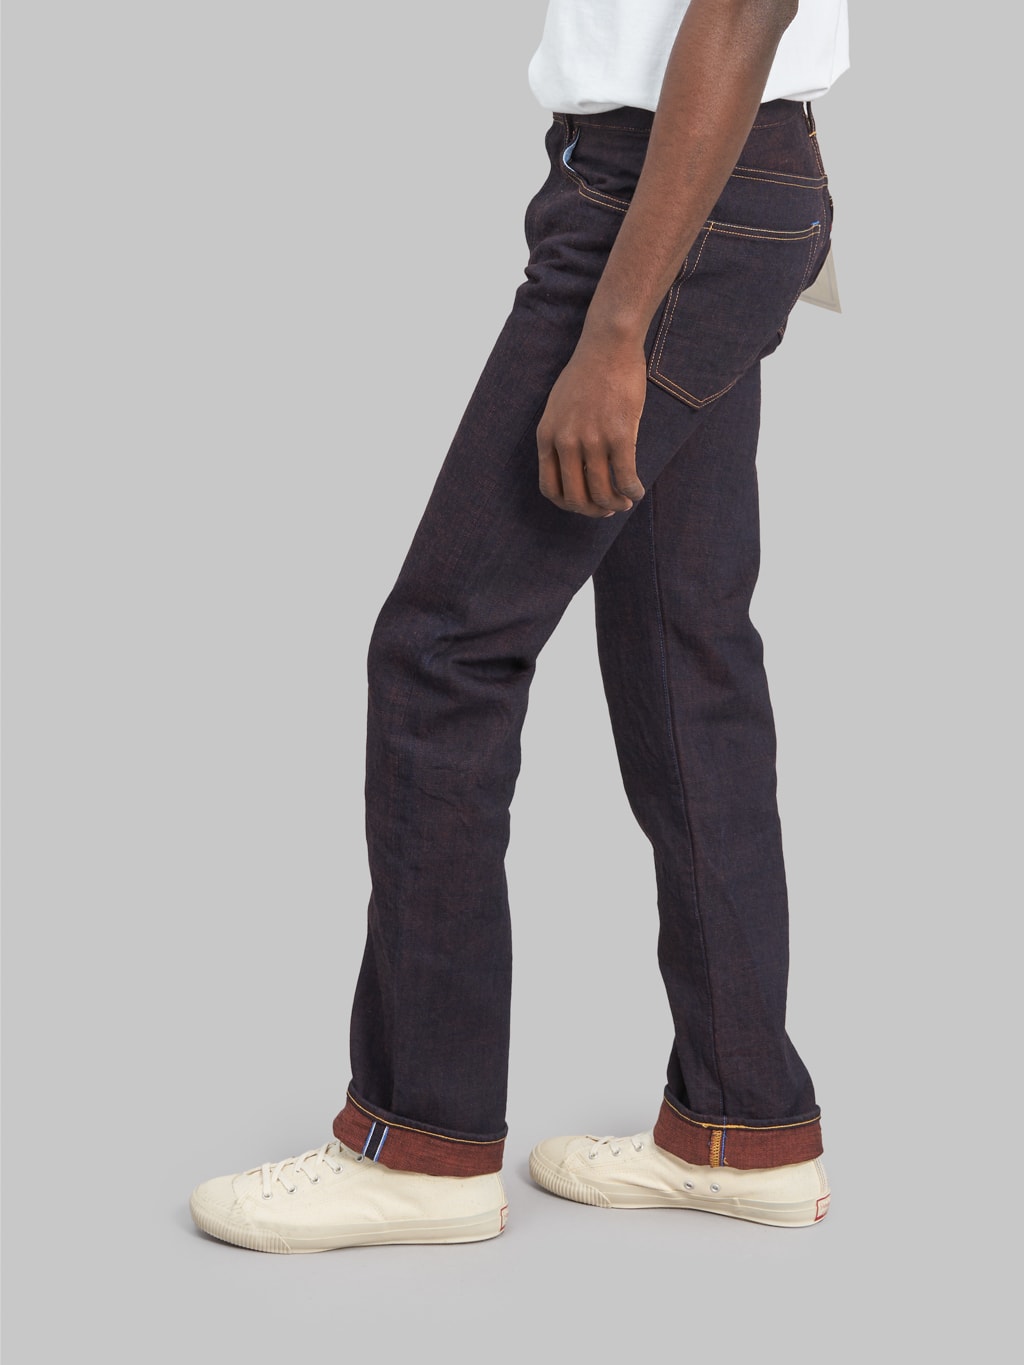 Tanuki KR "Kakishibu" 14.5oz Regular Straight Jeans